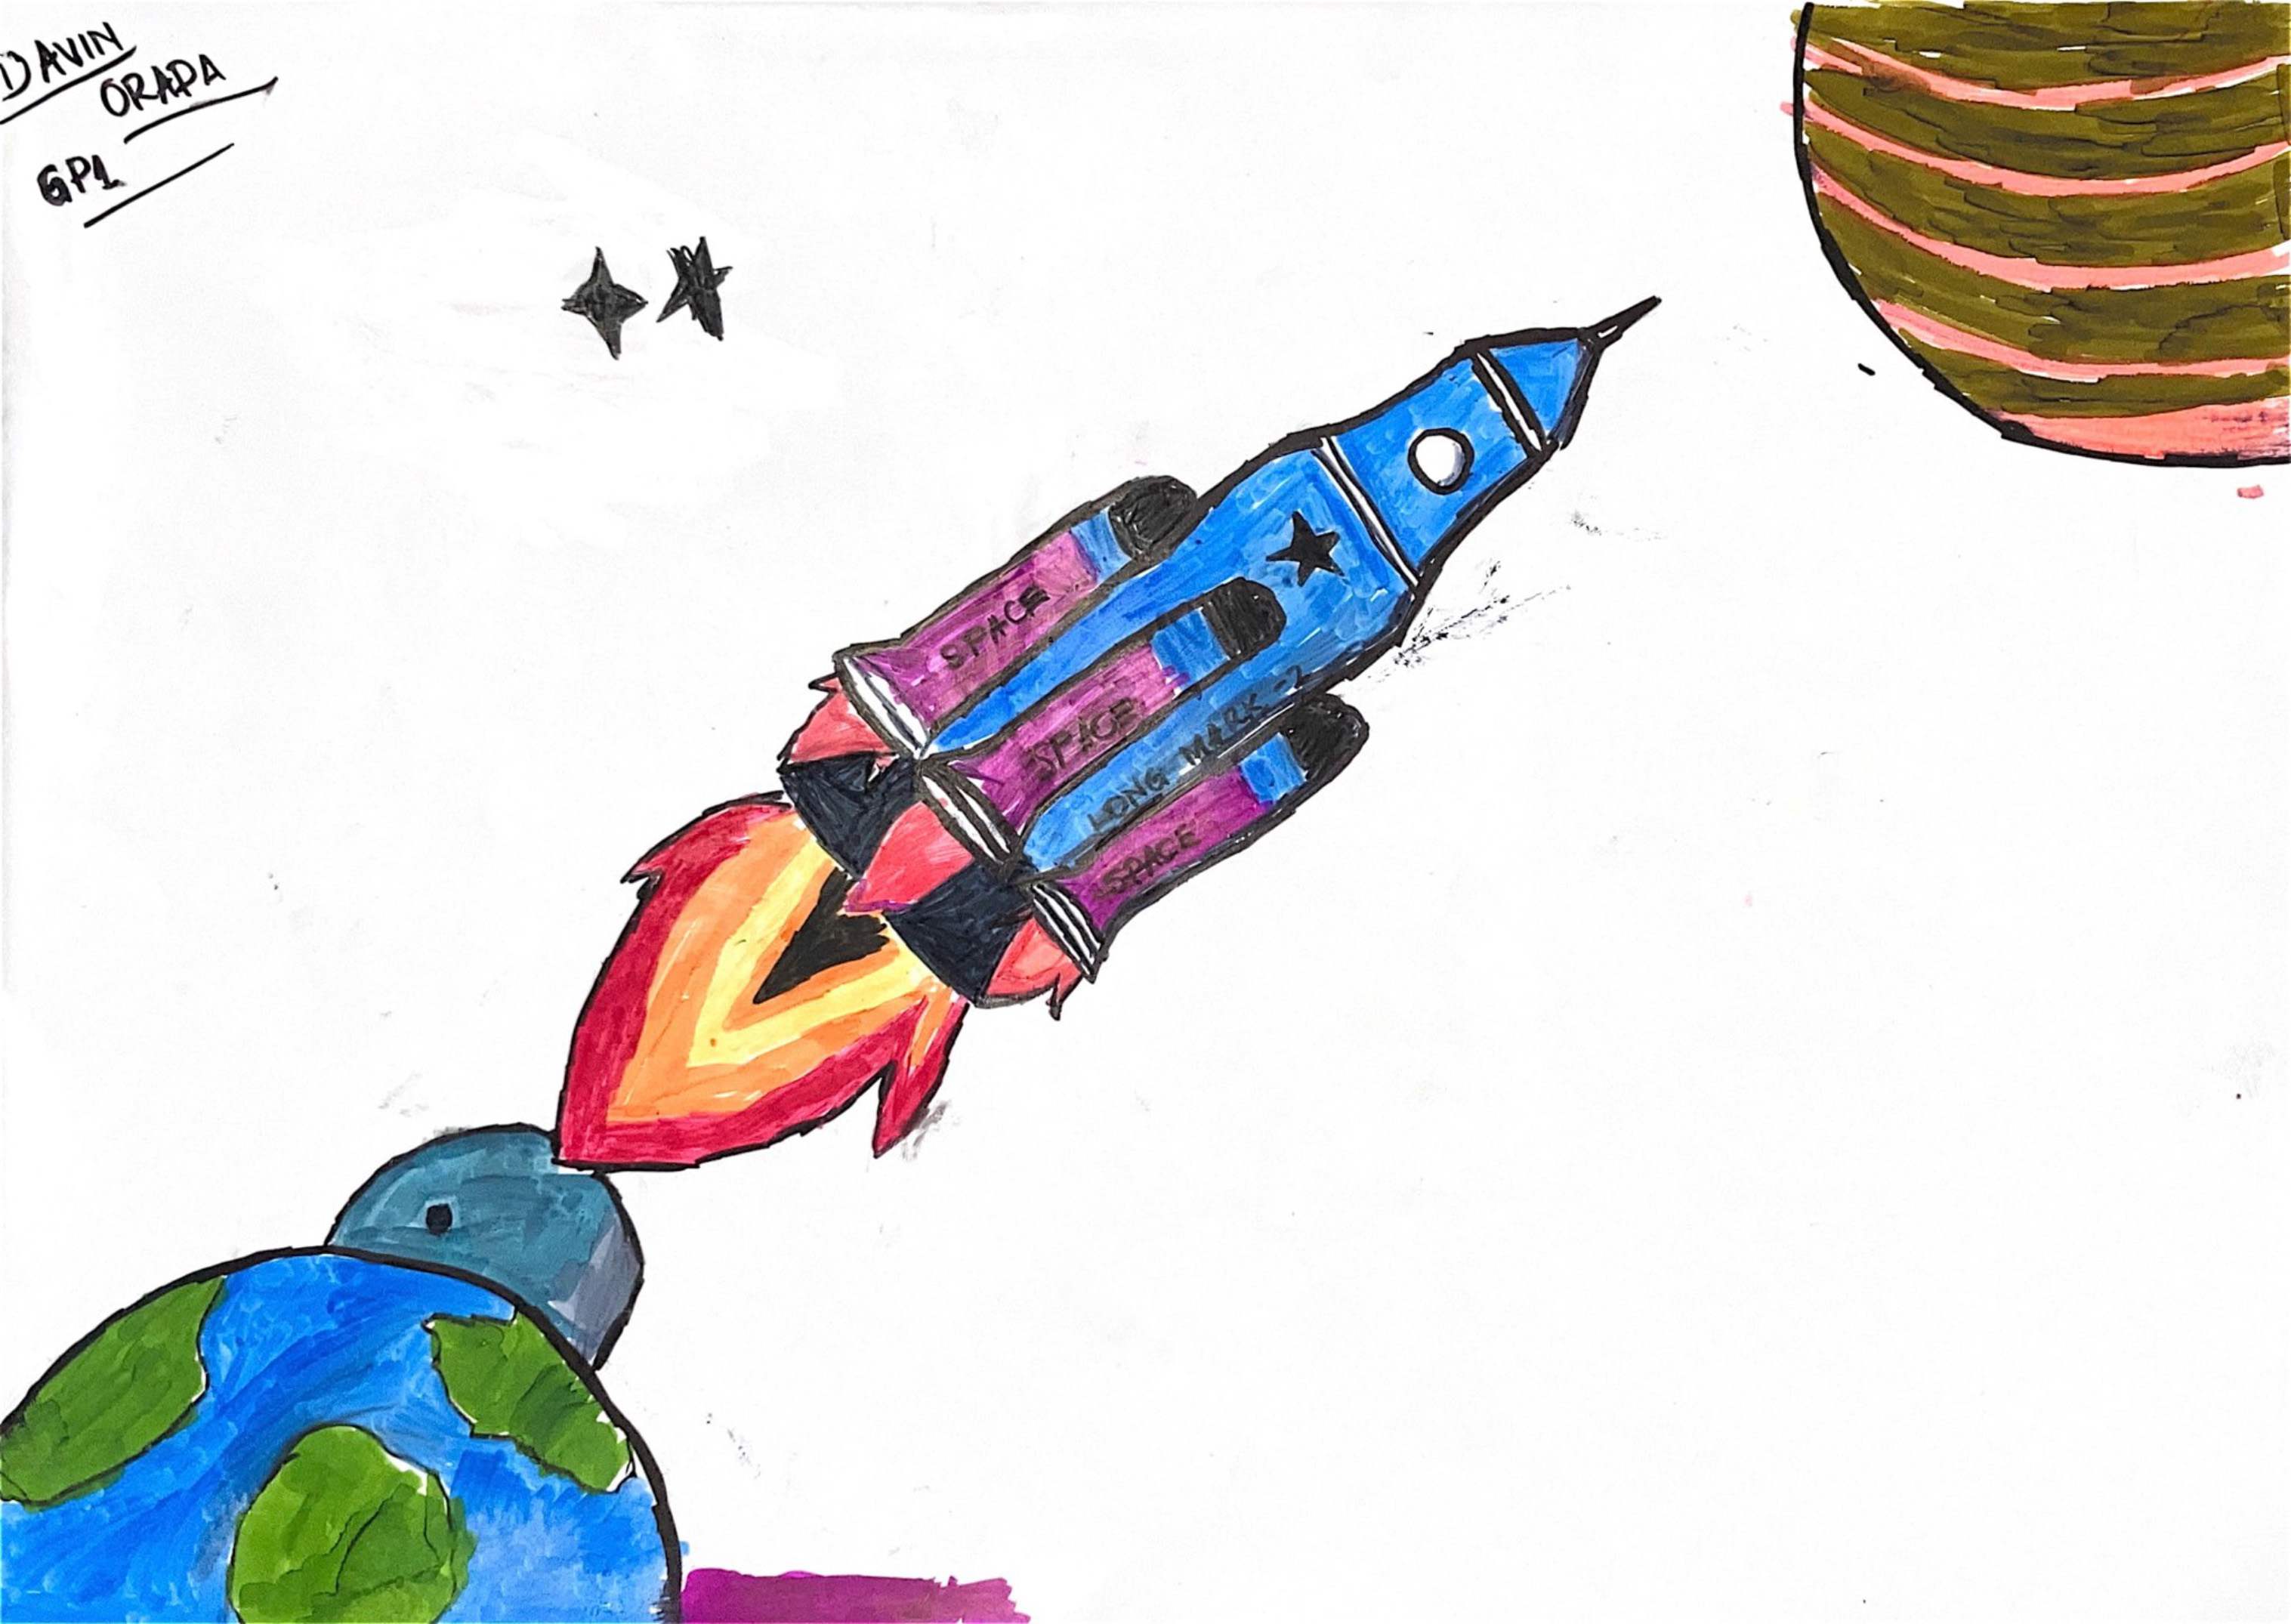 航天日绘画作品《开启我的“问天”旅行模式》,肯尼亚 大卫·奥拉达（David Orada）